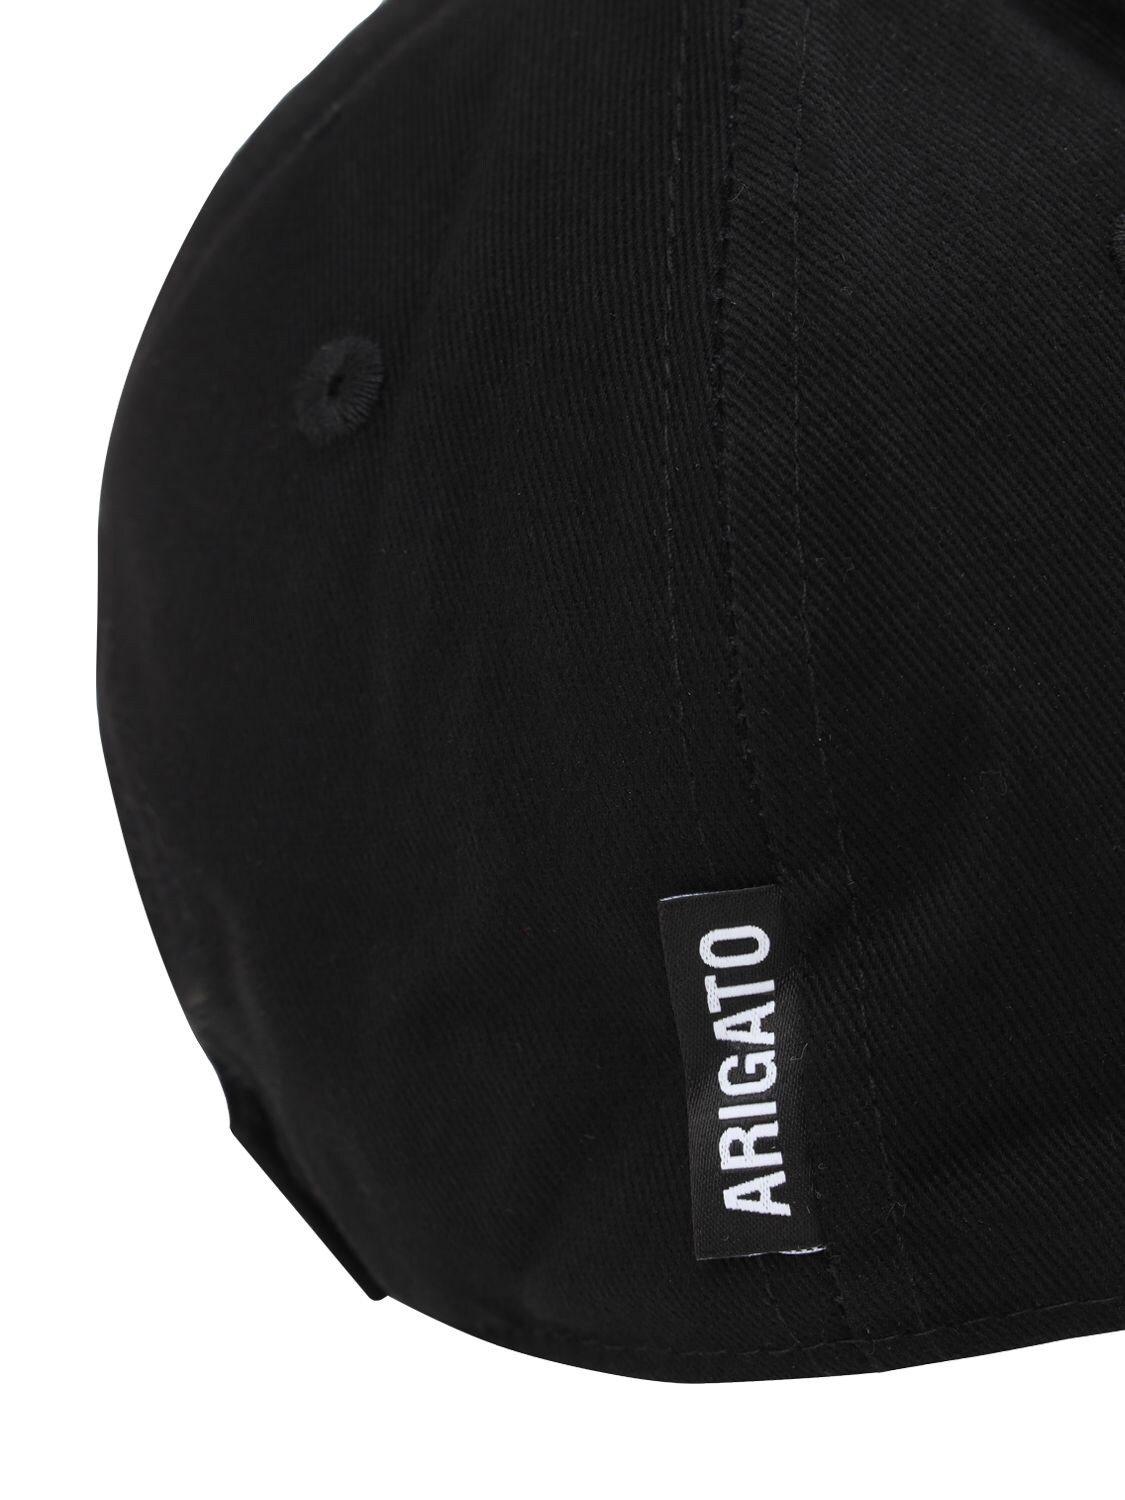 AXEL ARIGATO Hats COTTON OPTIMIST BASEBALL HAT